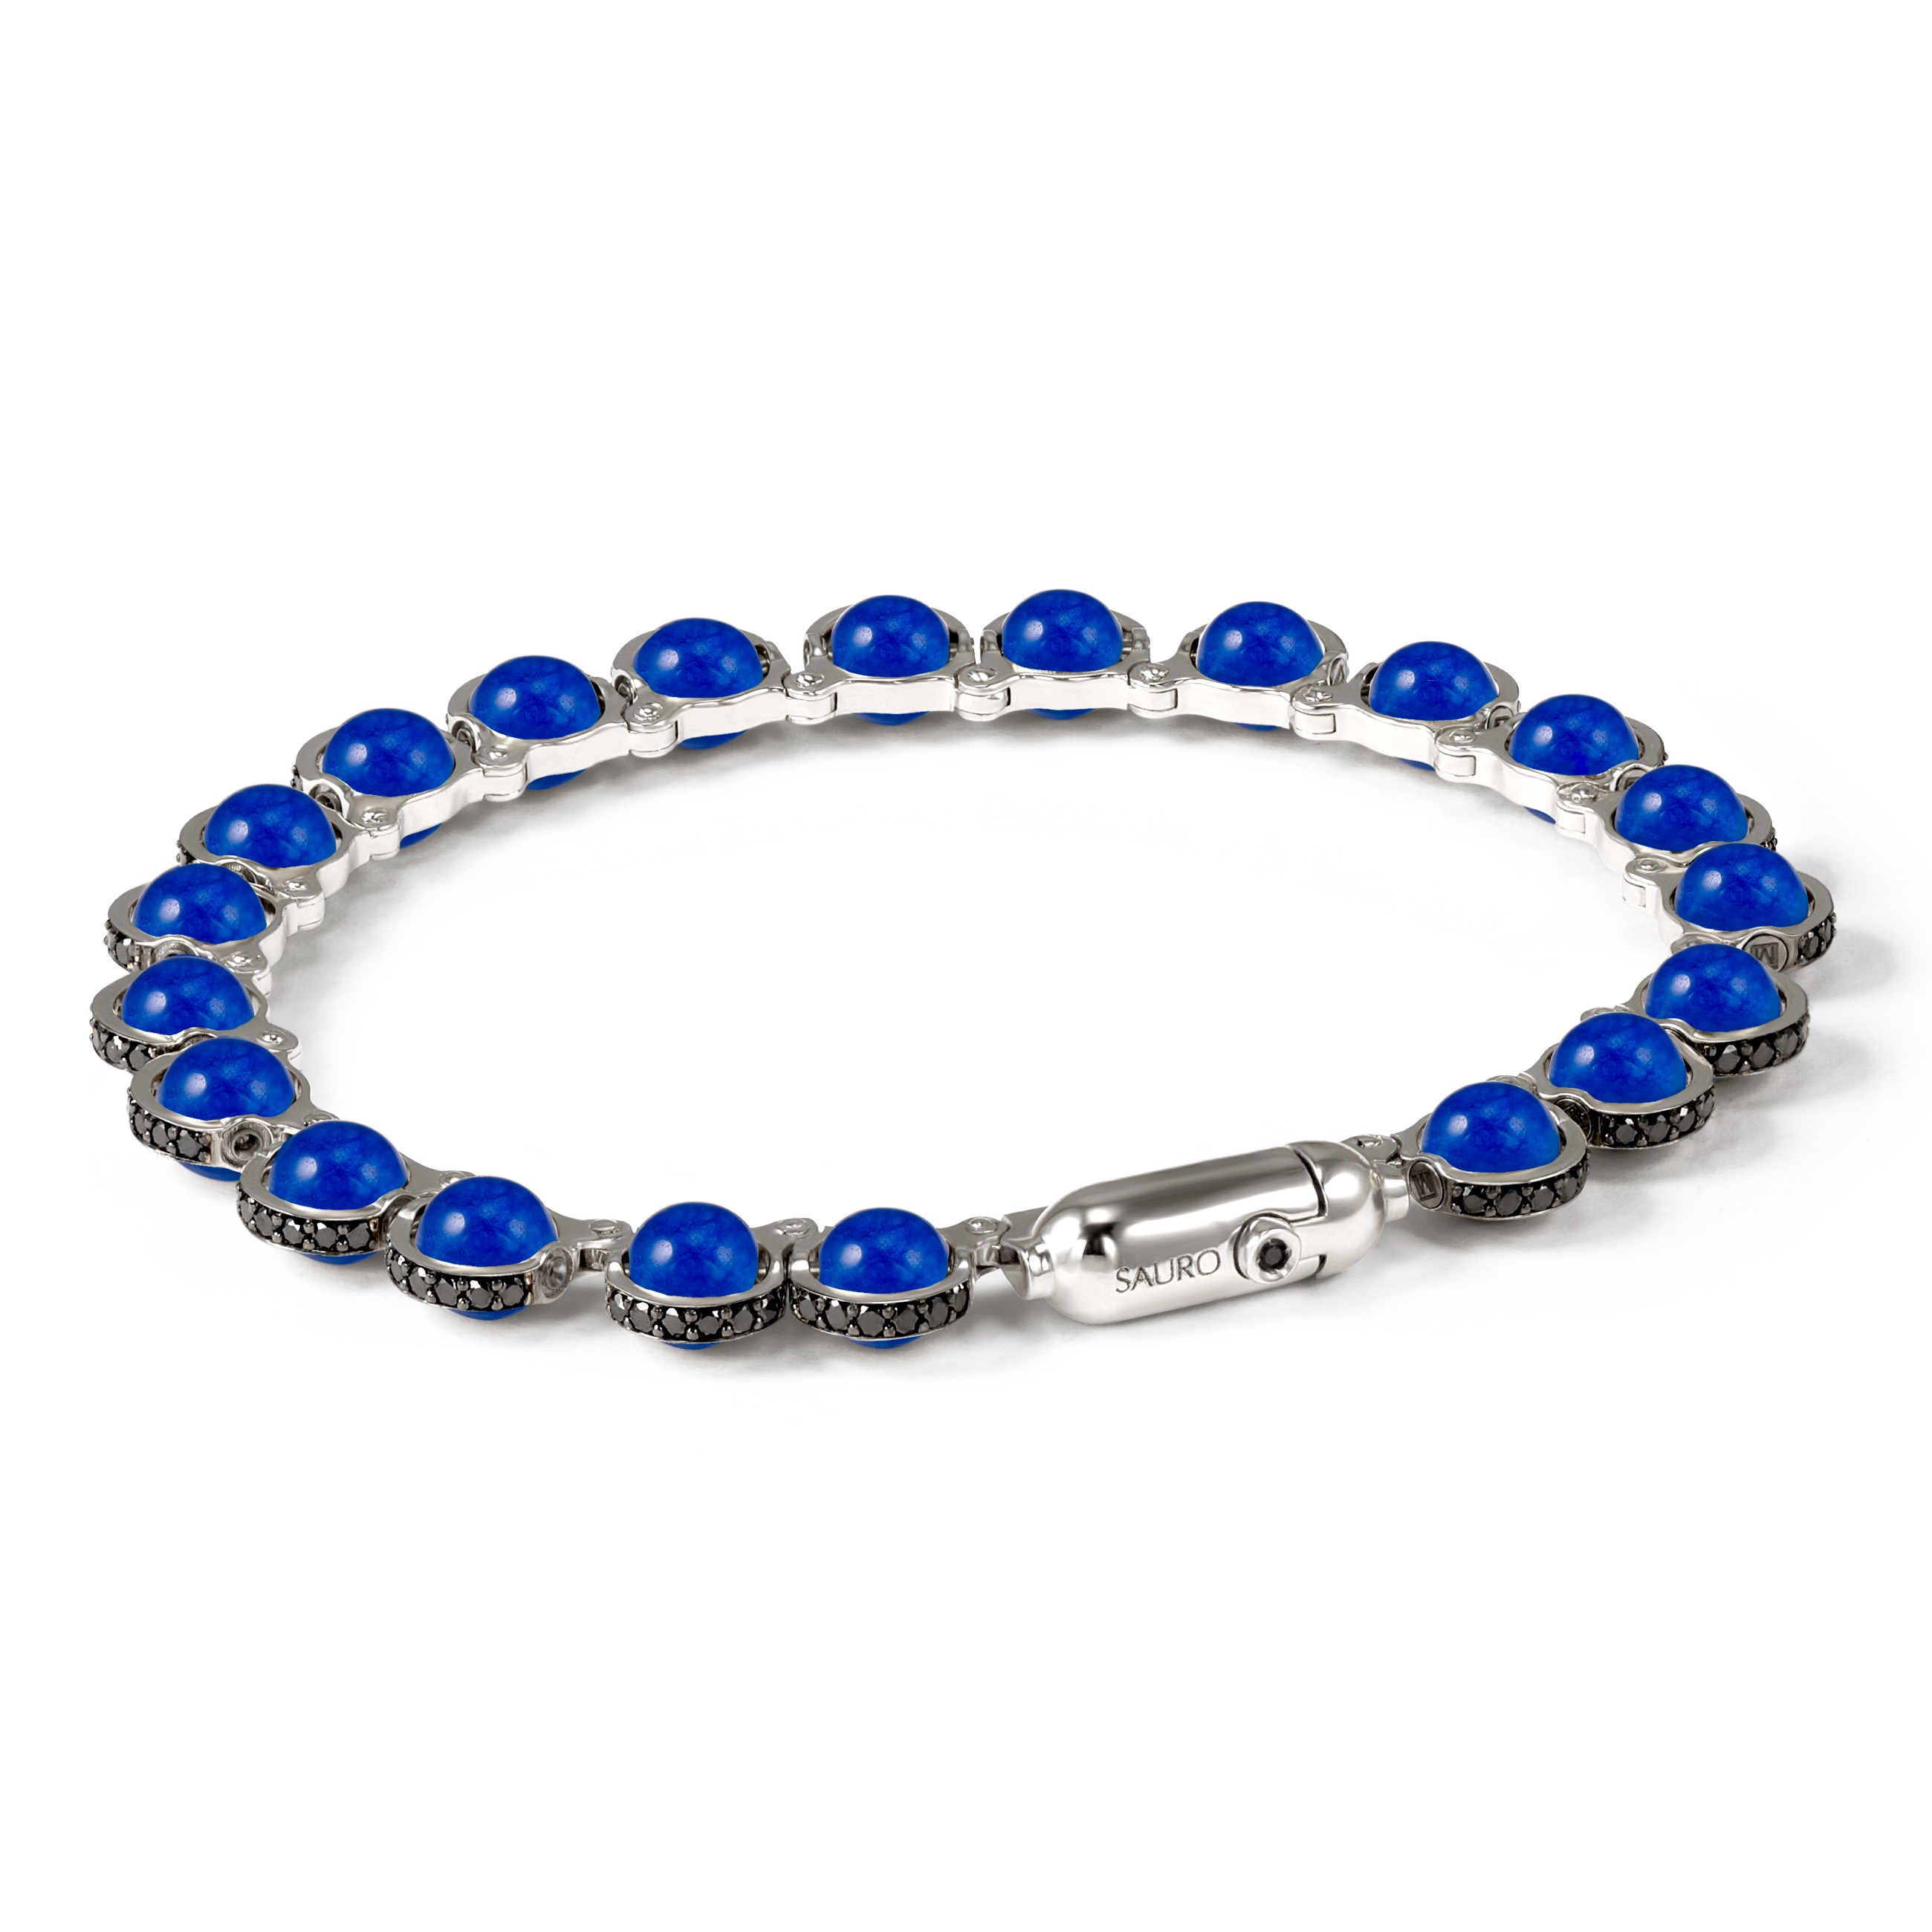 Bracelet for men of Hematite and Burmese blue Sapphire stones - JoyElly